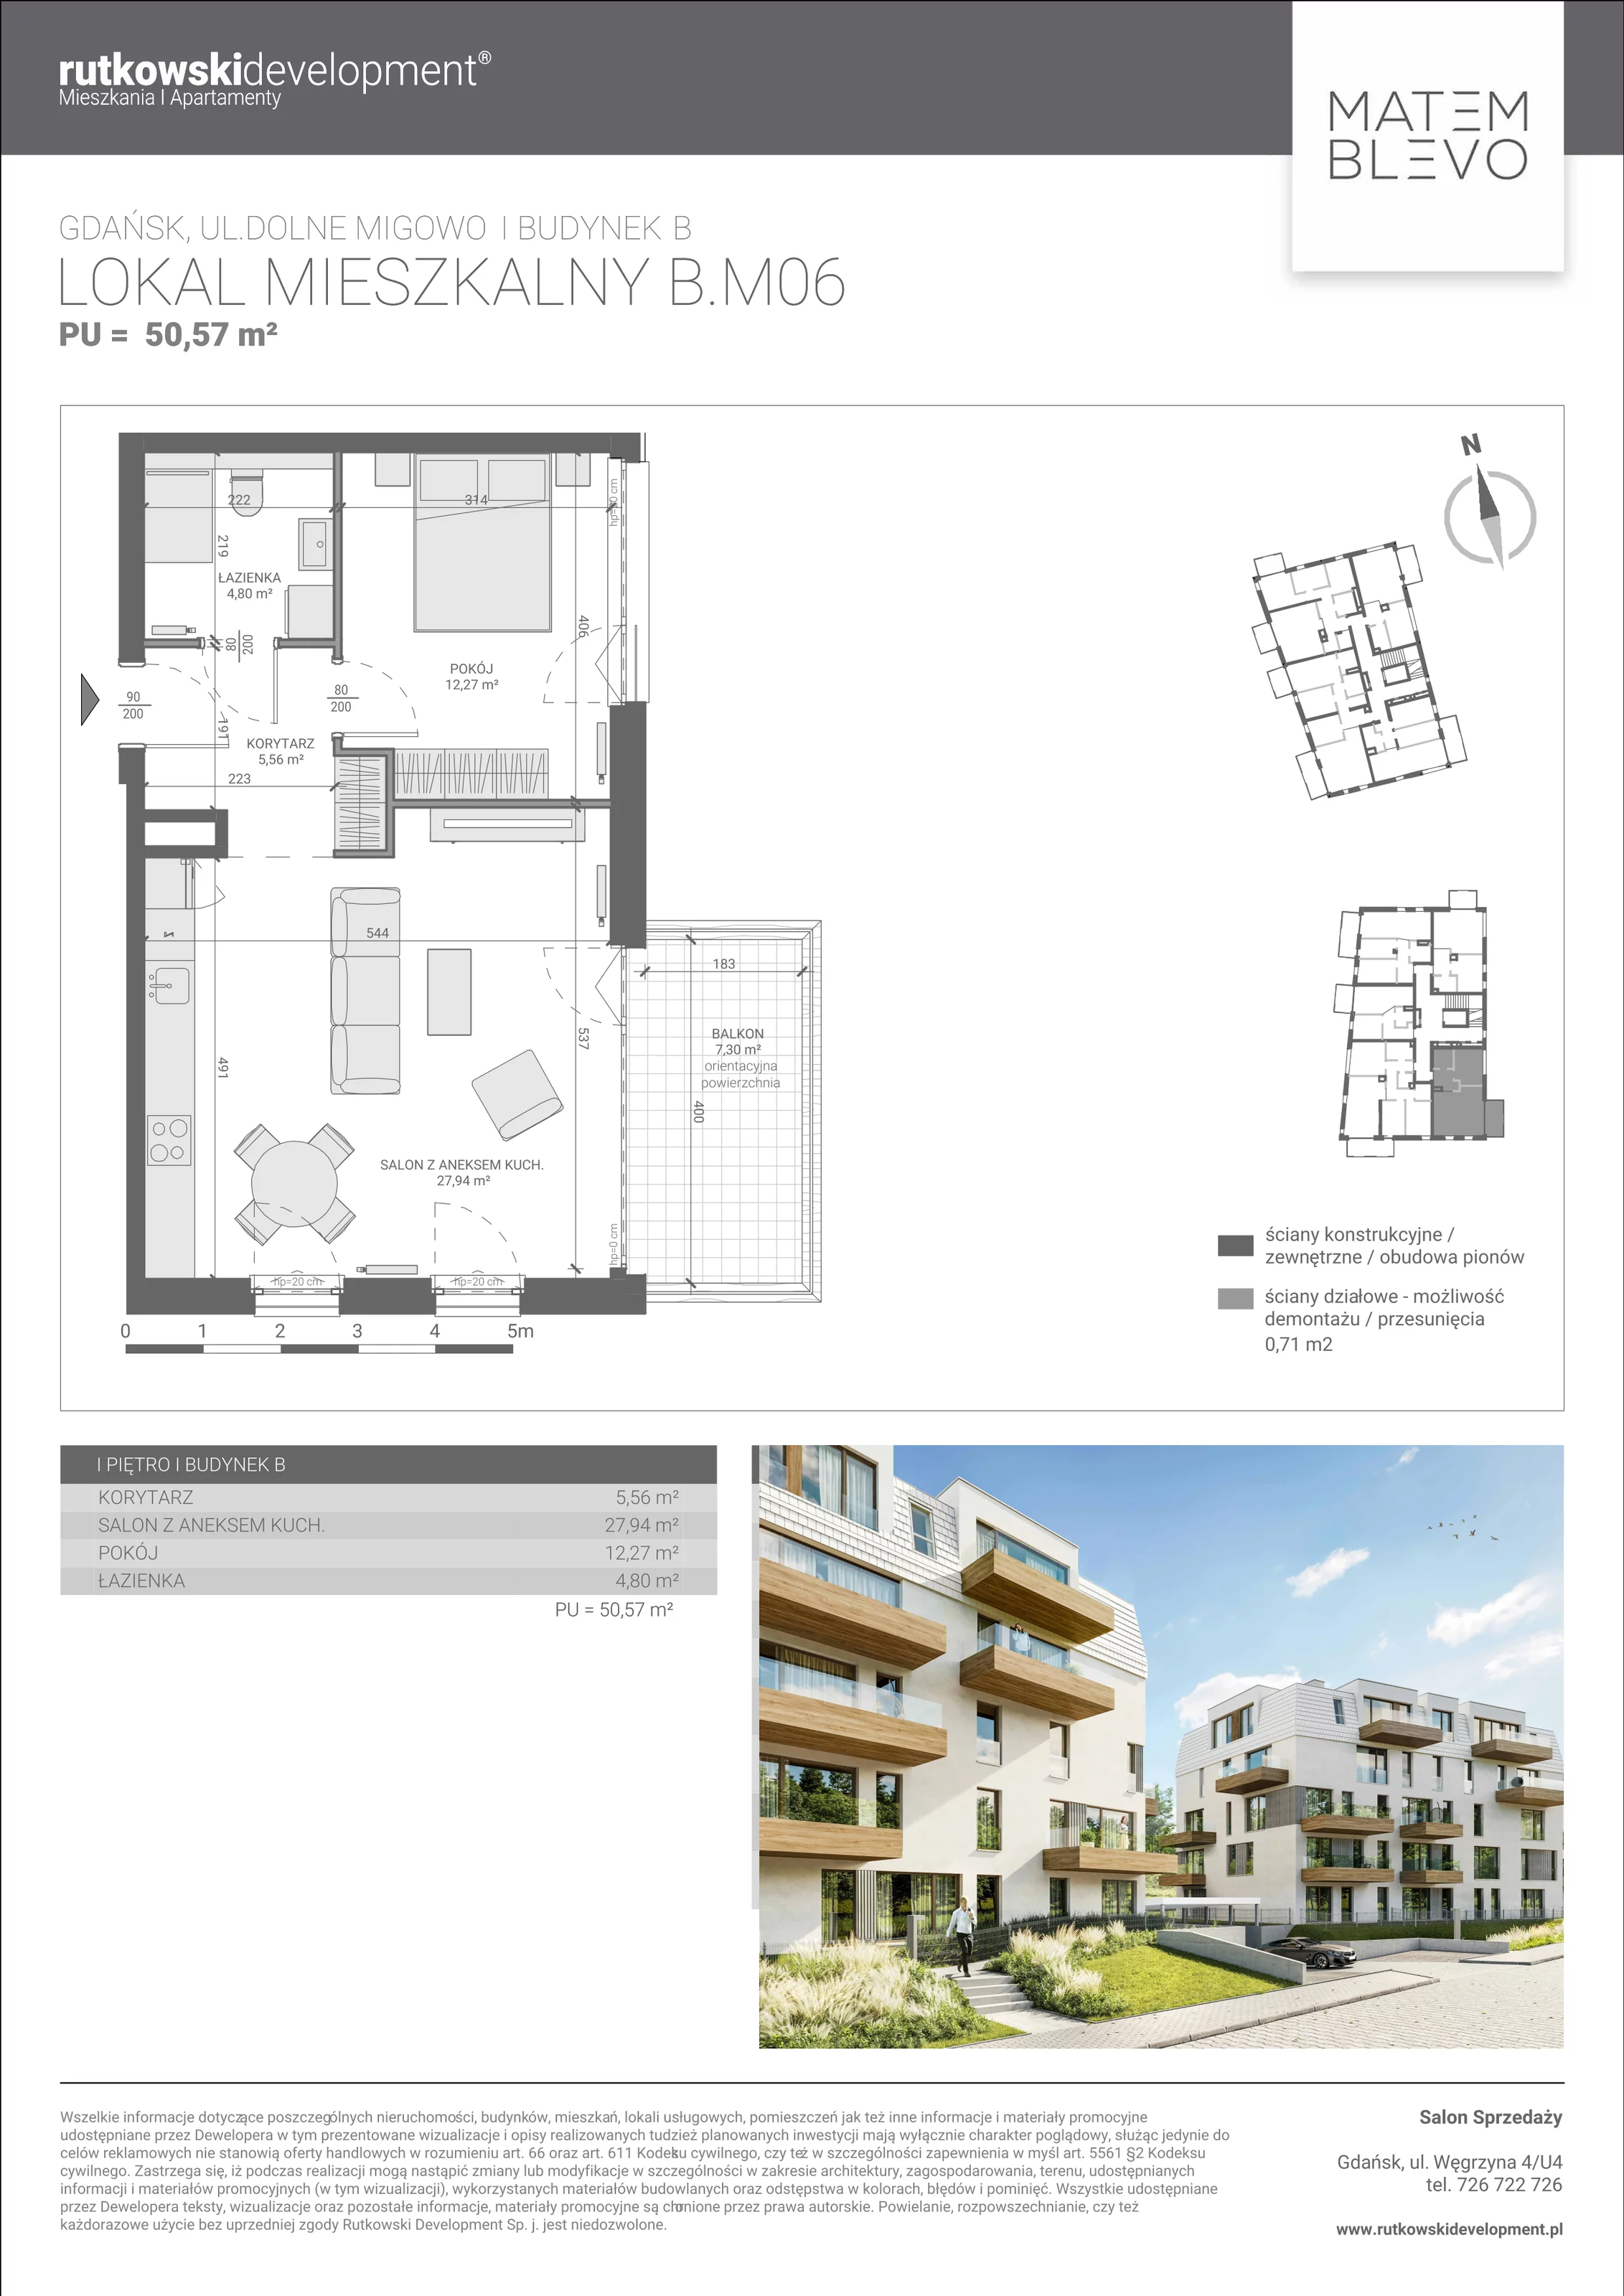 Mieszkanie 50,57 m², piętro 1, oferta nr B.M06, Matemblevo, Gdańsk, Brętowo, ul. Dolne Migowo 23 D